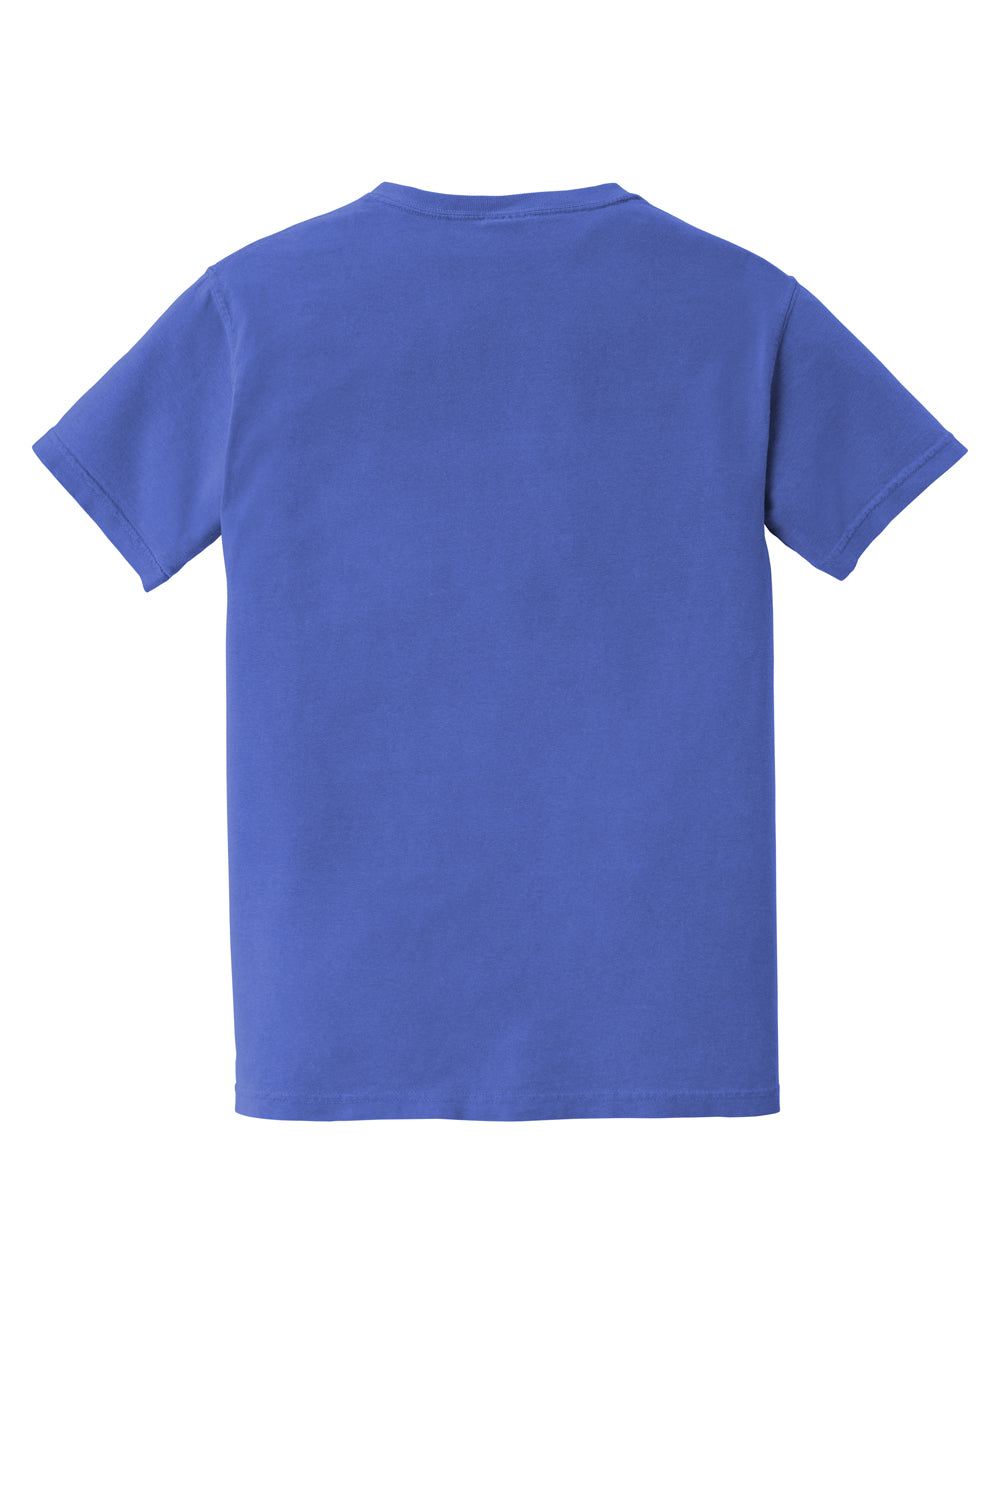 Comfort Colors Mens Short Sleeve Crewneck T-Shirt w/ Pocket Mystic Blue Flat Back